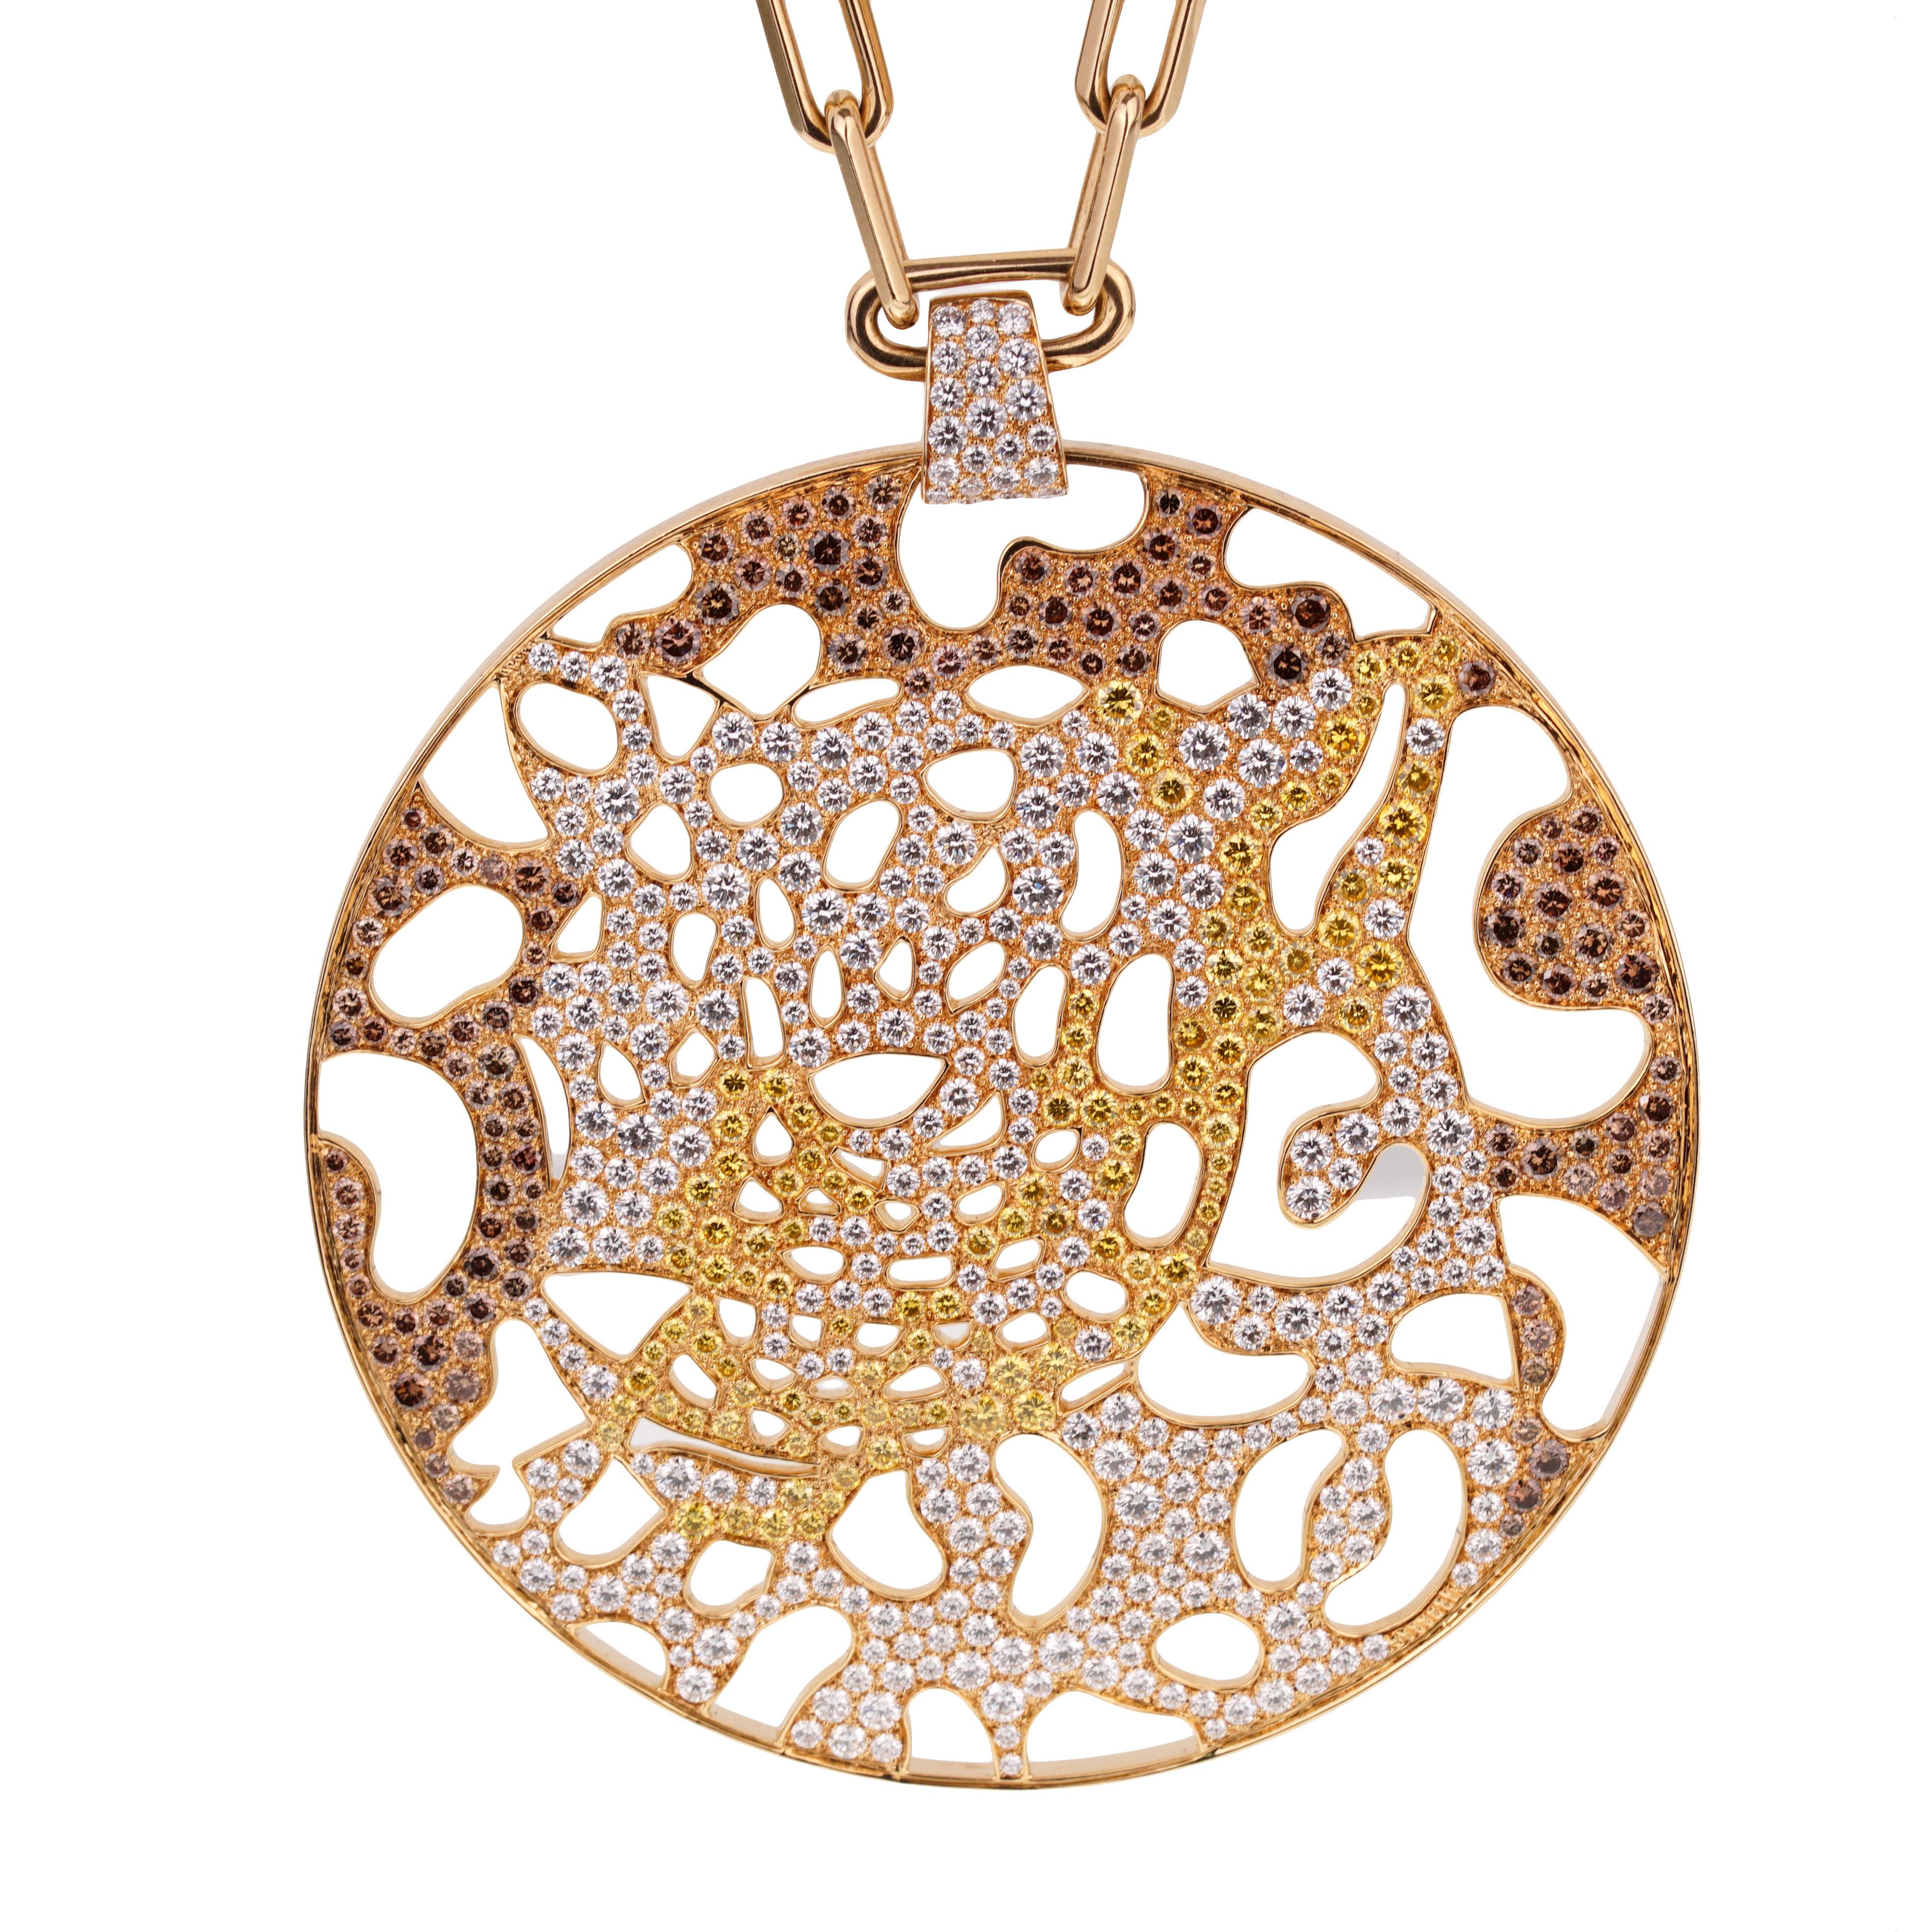 Cartier Panthere durchbrochene Gold-Halskette in limitierter Auflage für Damen oder Herren